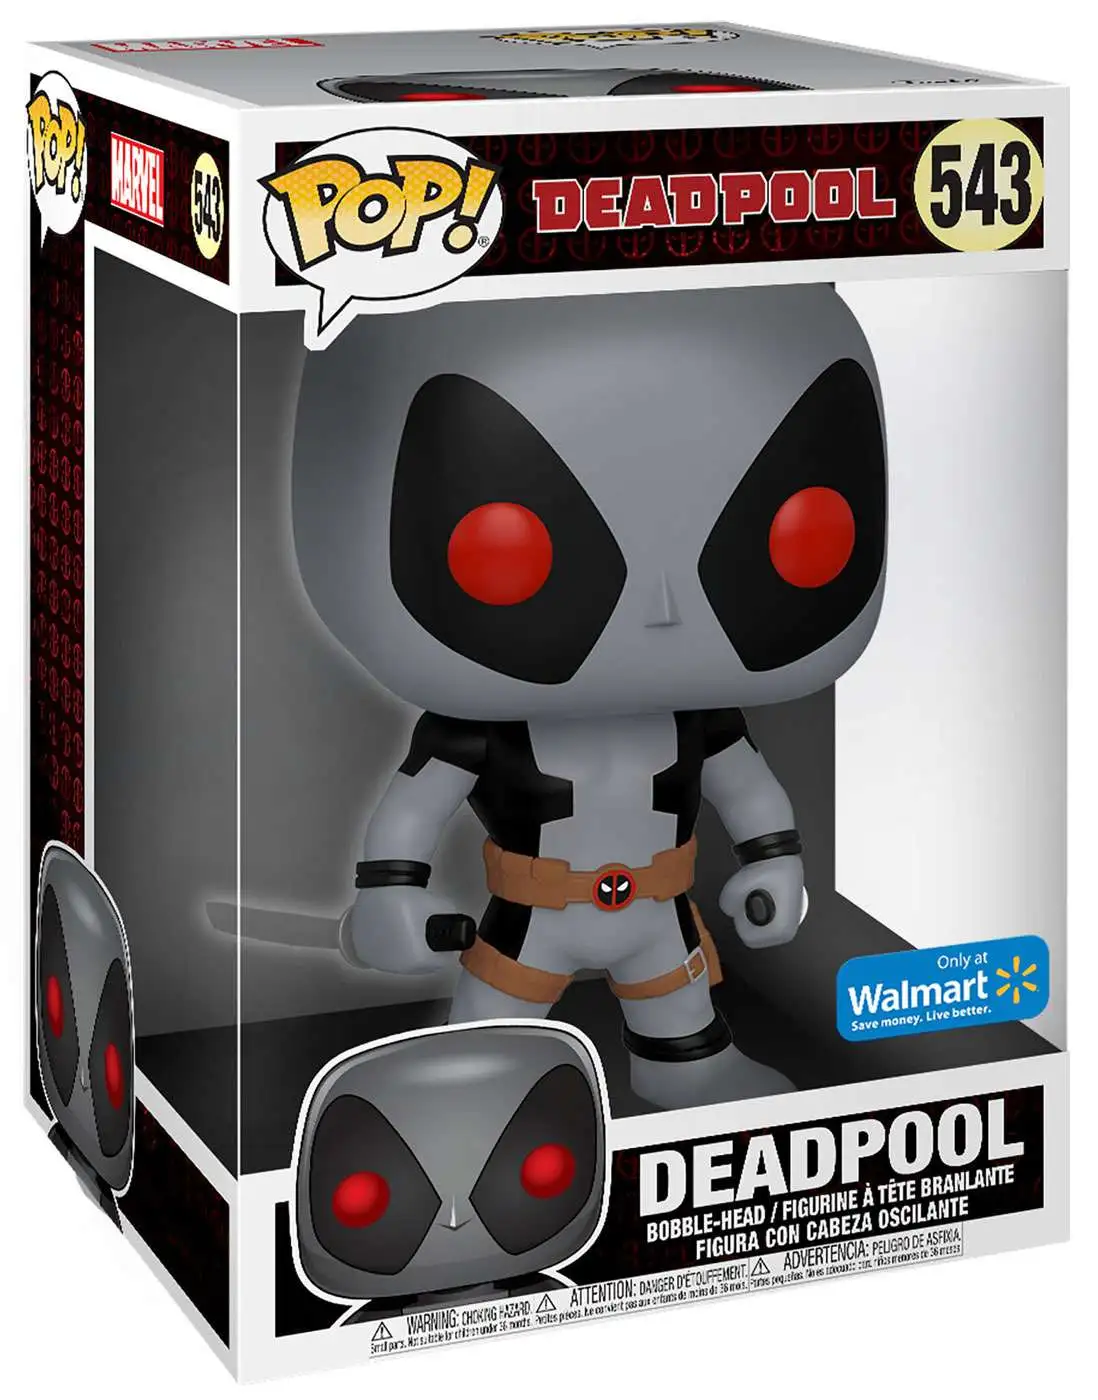 Funko Pop! Marvel Deadpool Swords Walmart Exclusive 10 Inch Bobble-Head  #543 - DE